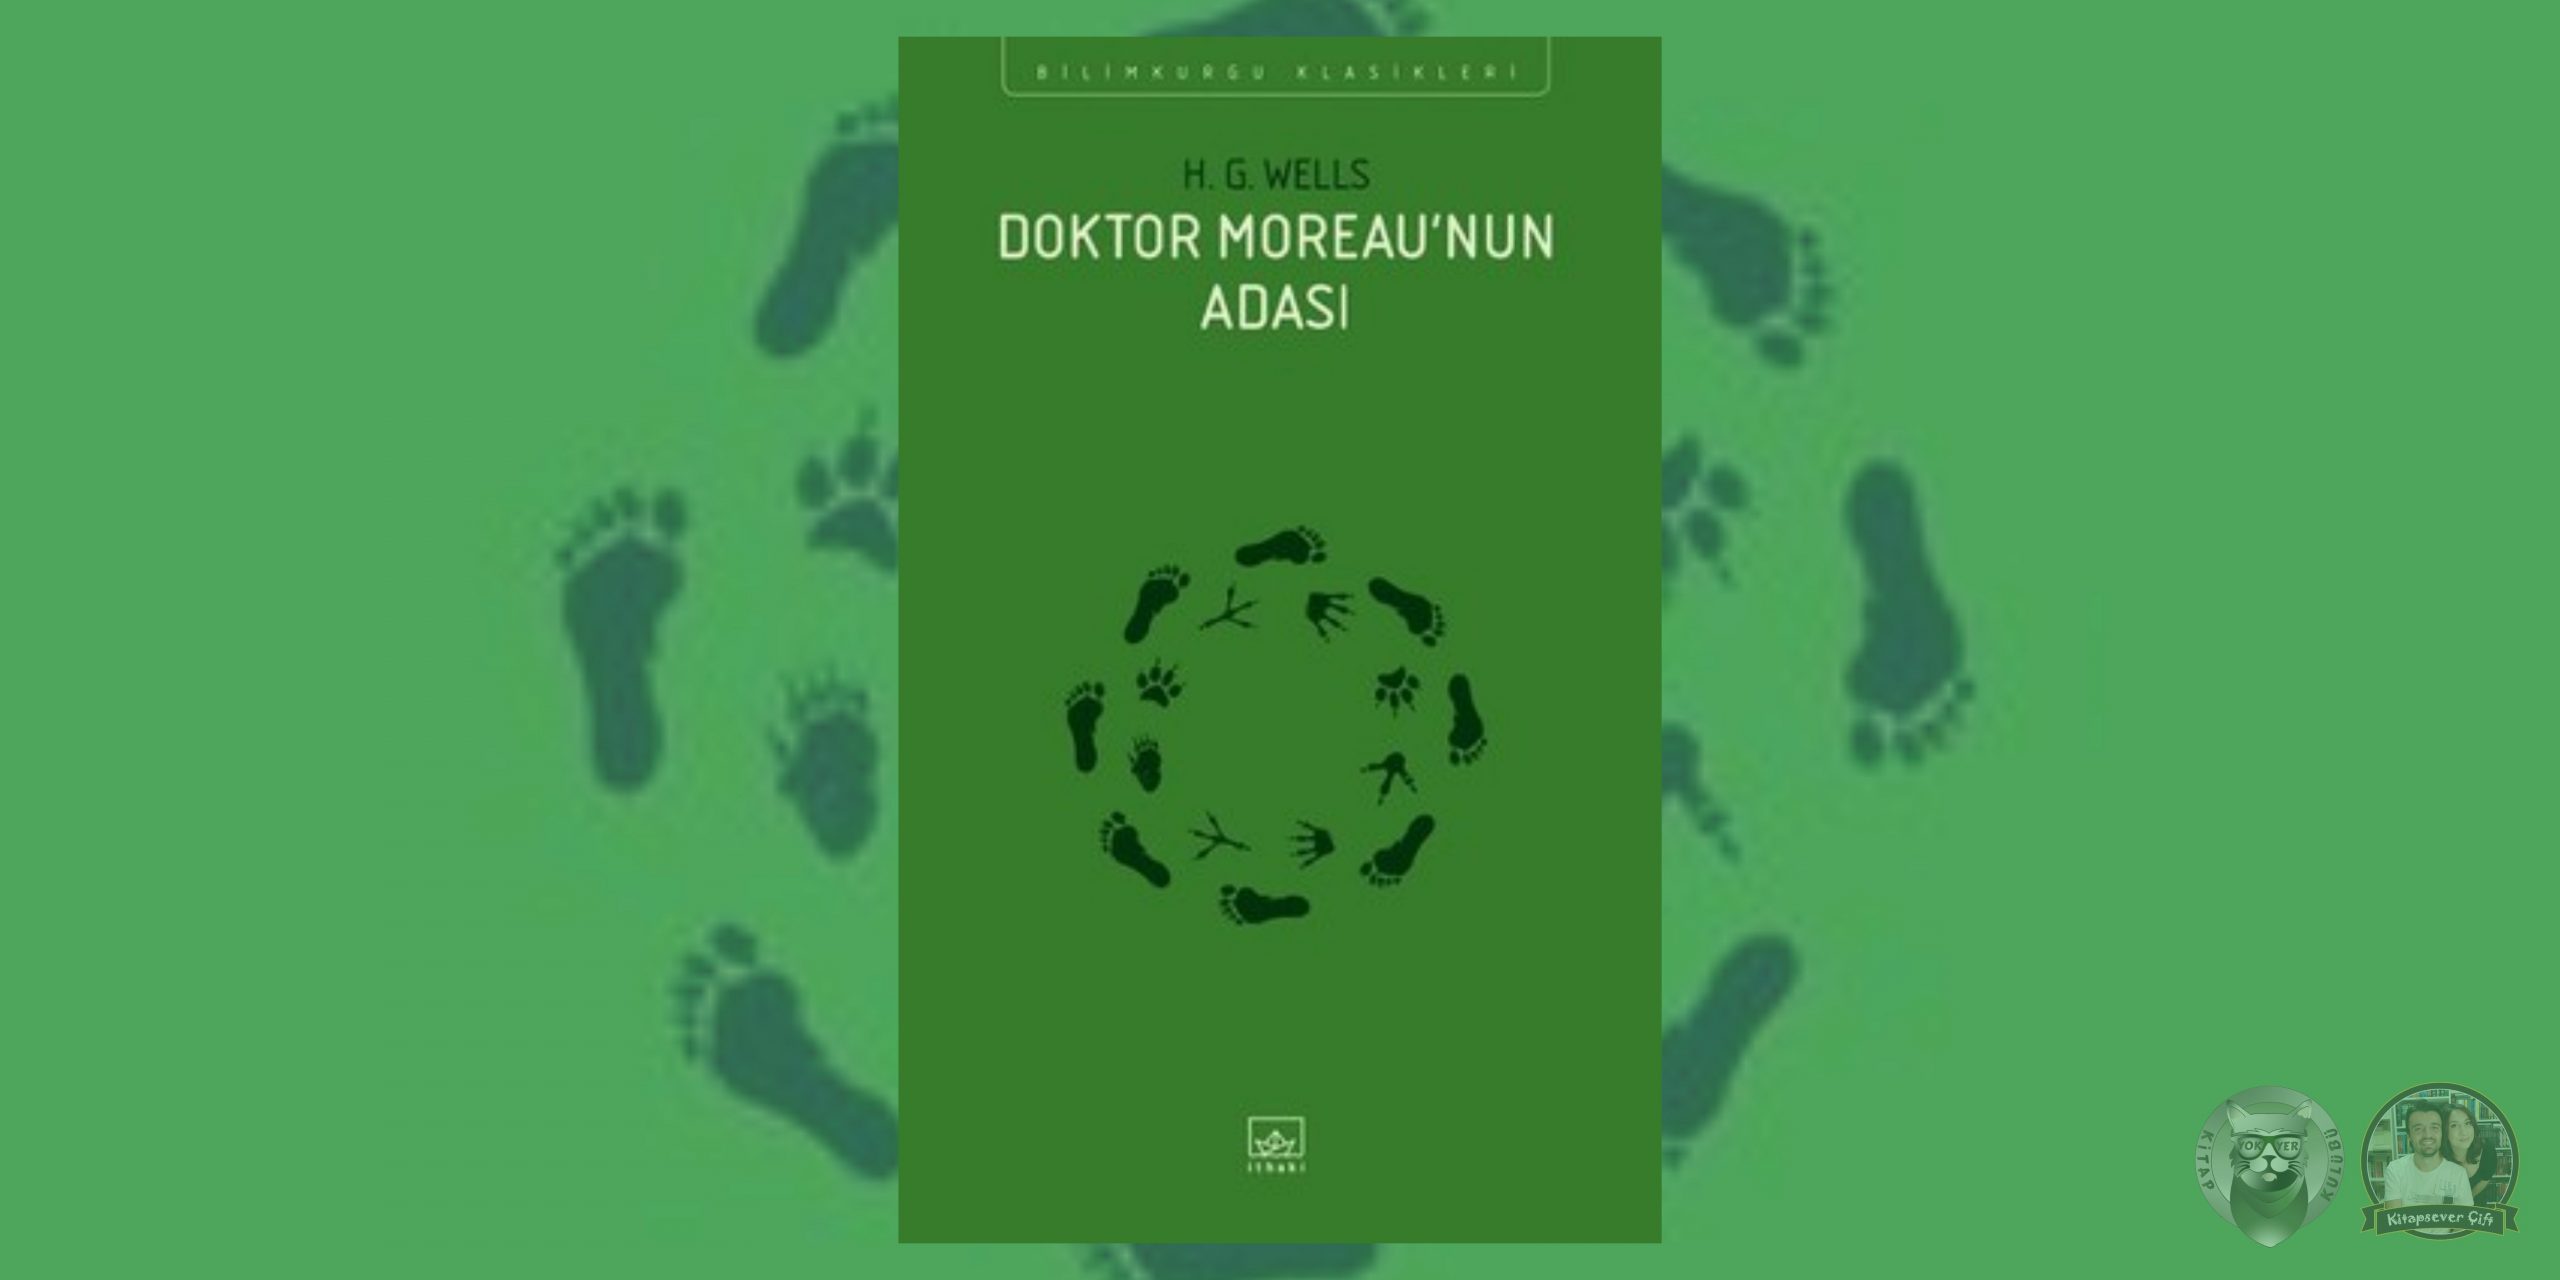 dorian gray'in portresi hayranlarına 11 kitap önerisi 11 – dr. moreaunun adasi scaled